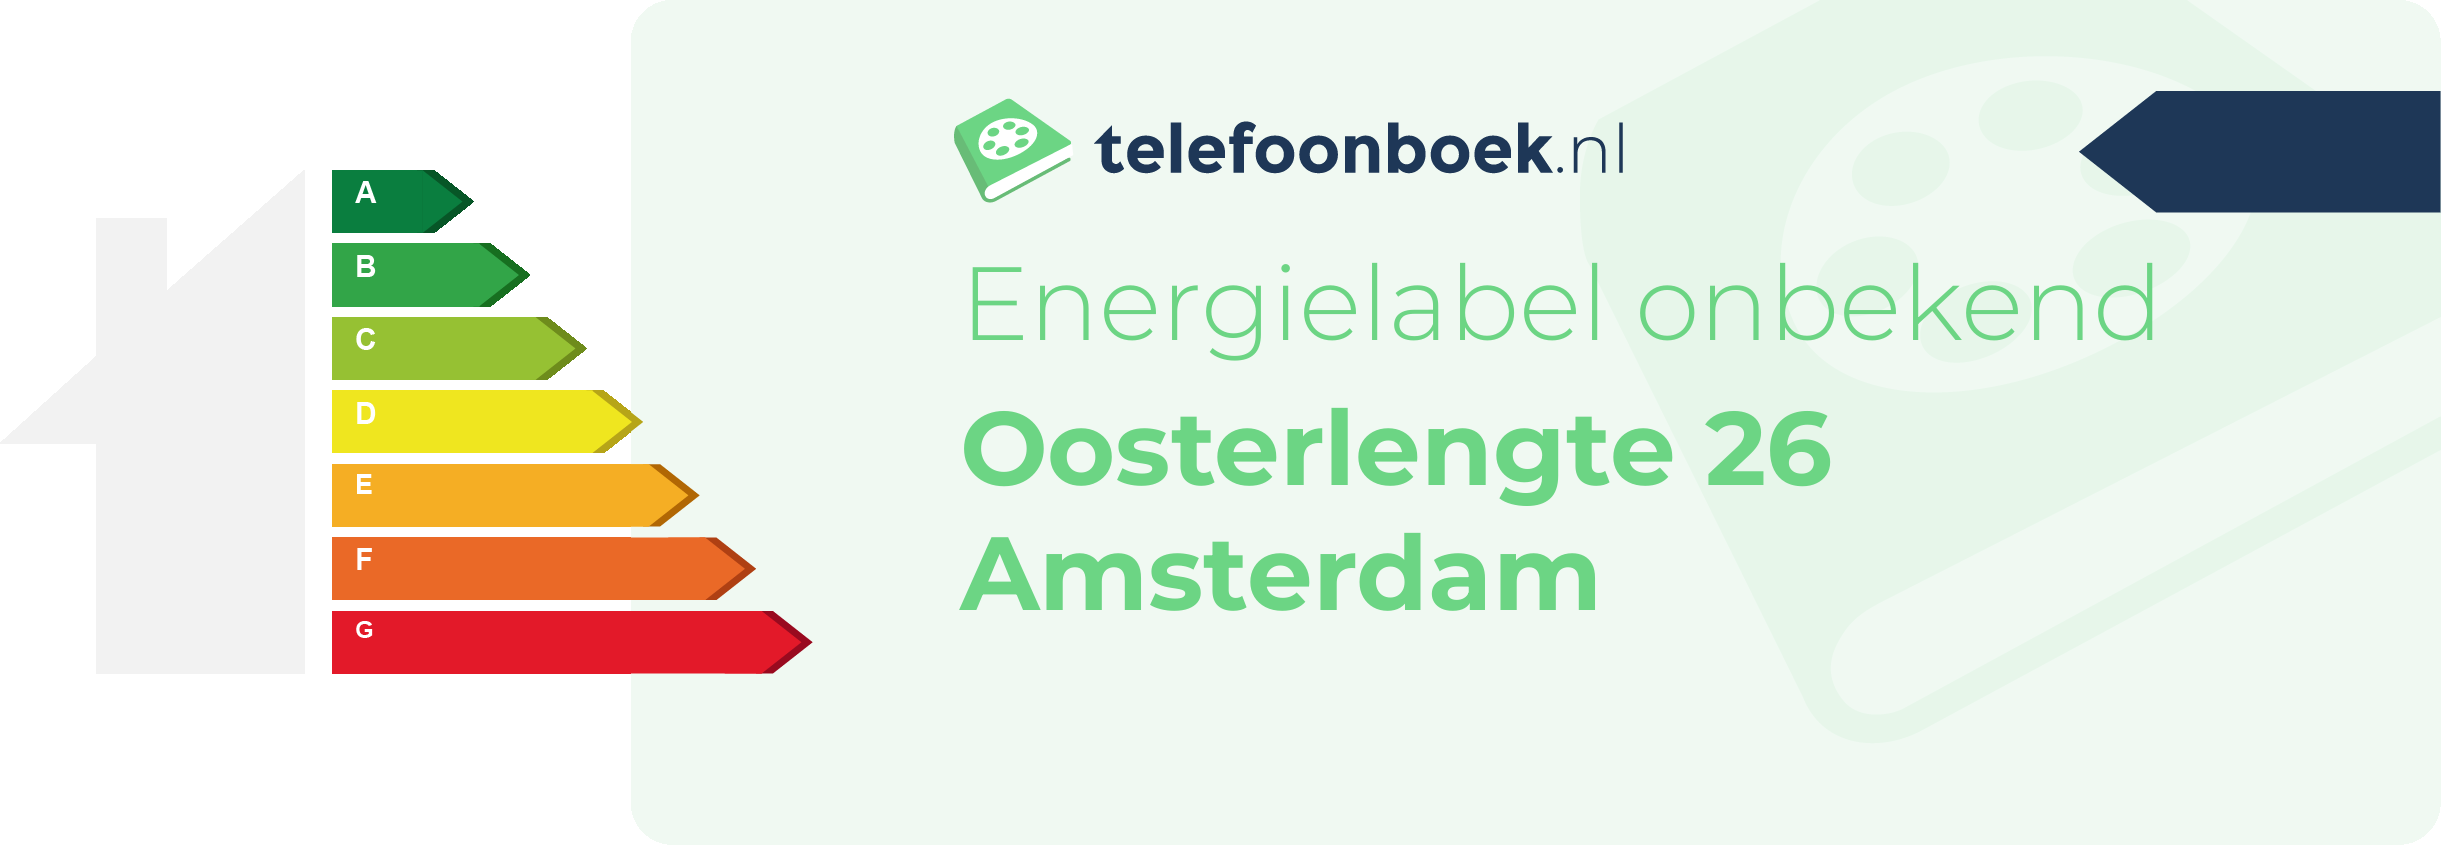 Energielabel Oosterlengte 26 Amsterdam